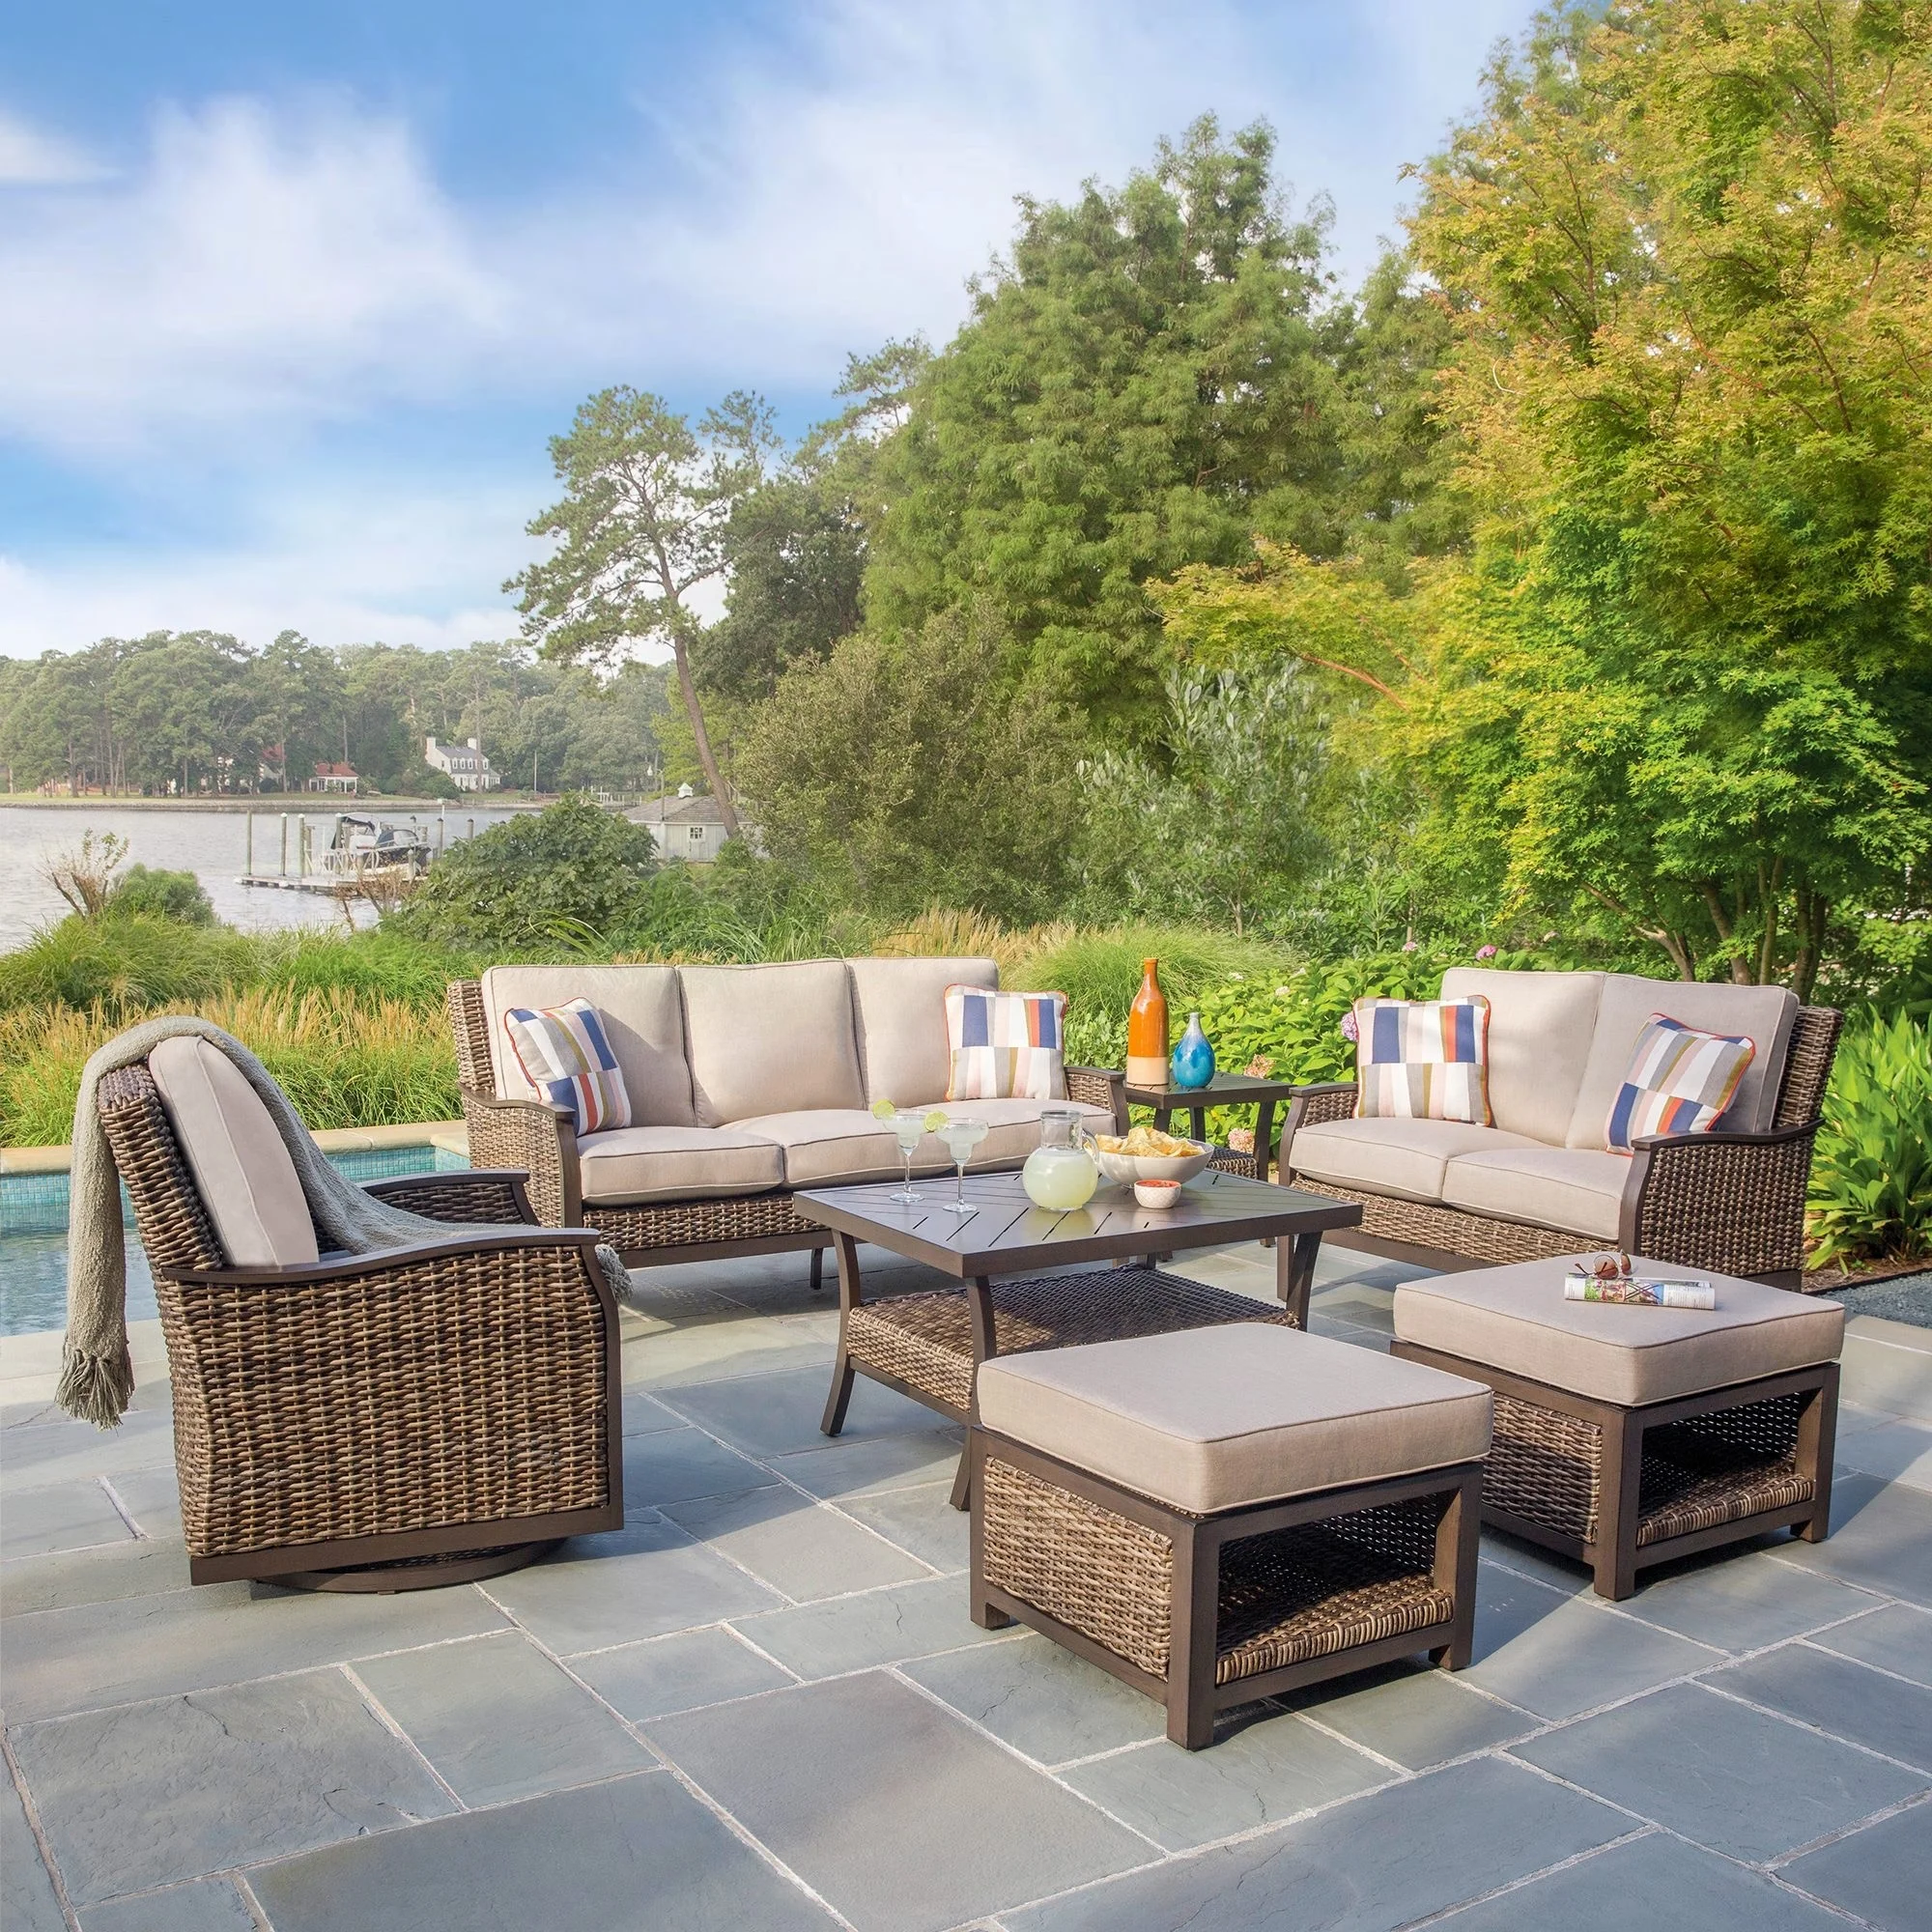 
Luxury Hotel Outdoor Leisure Furniture Garden Rattan Wicker Sofa Sets 